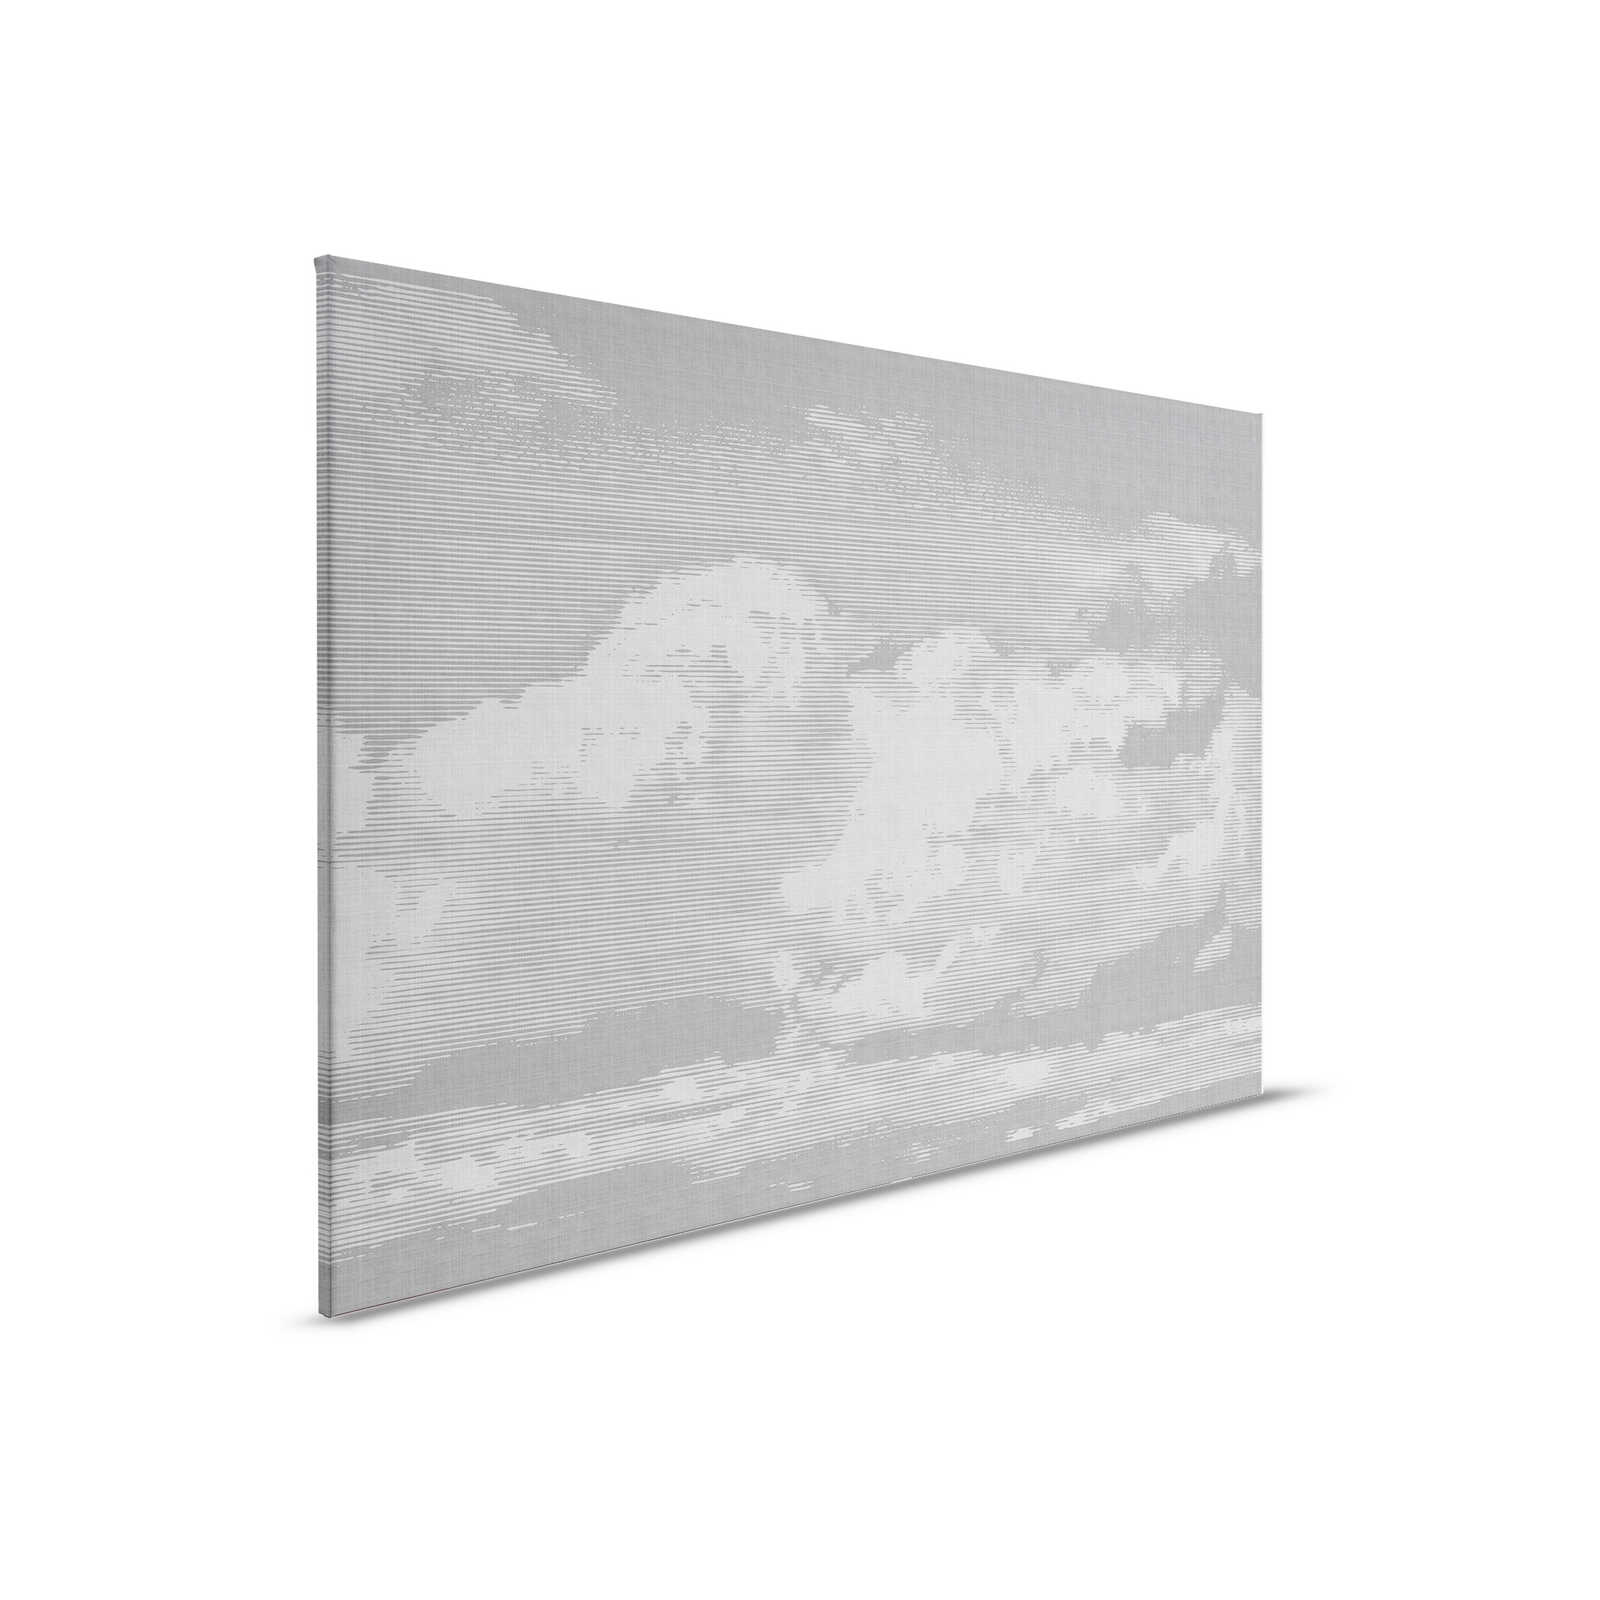 Clouds 2 - Toile céleste en lin naturel avec motif de nuages - 0,90 m x 0,60 m
